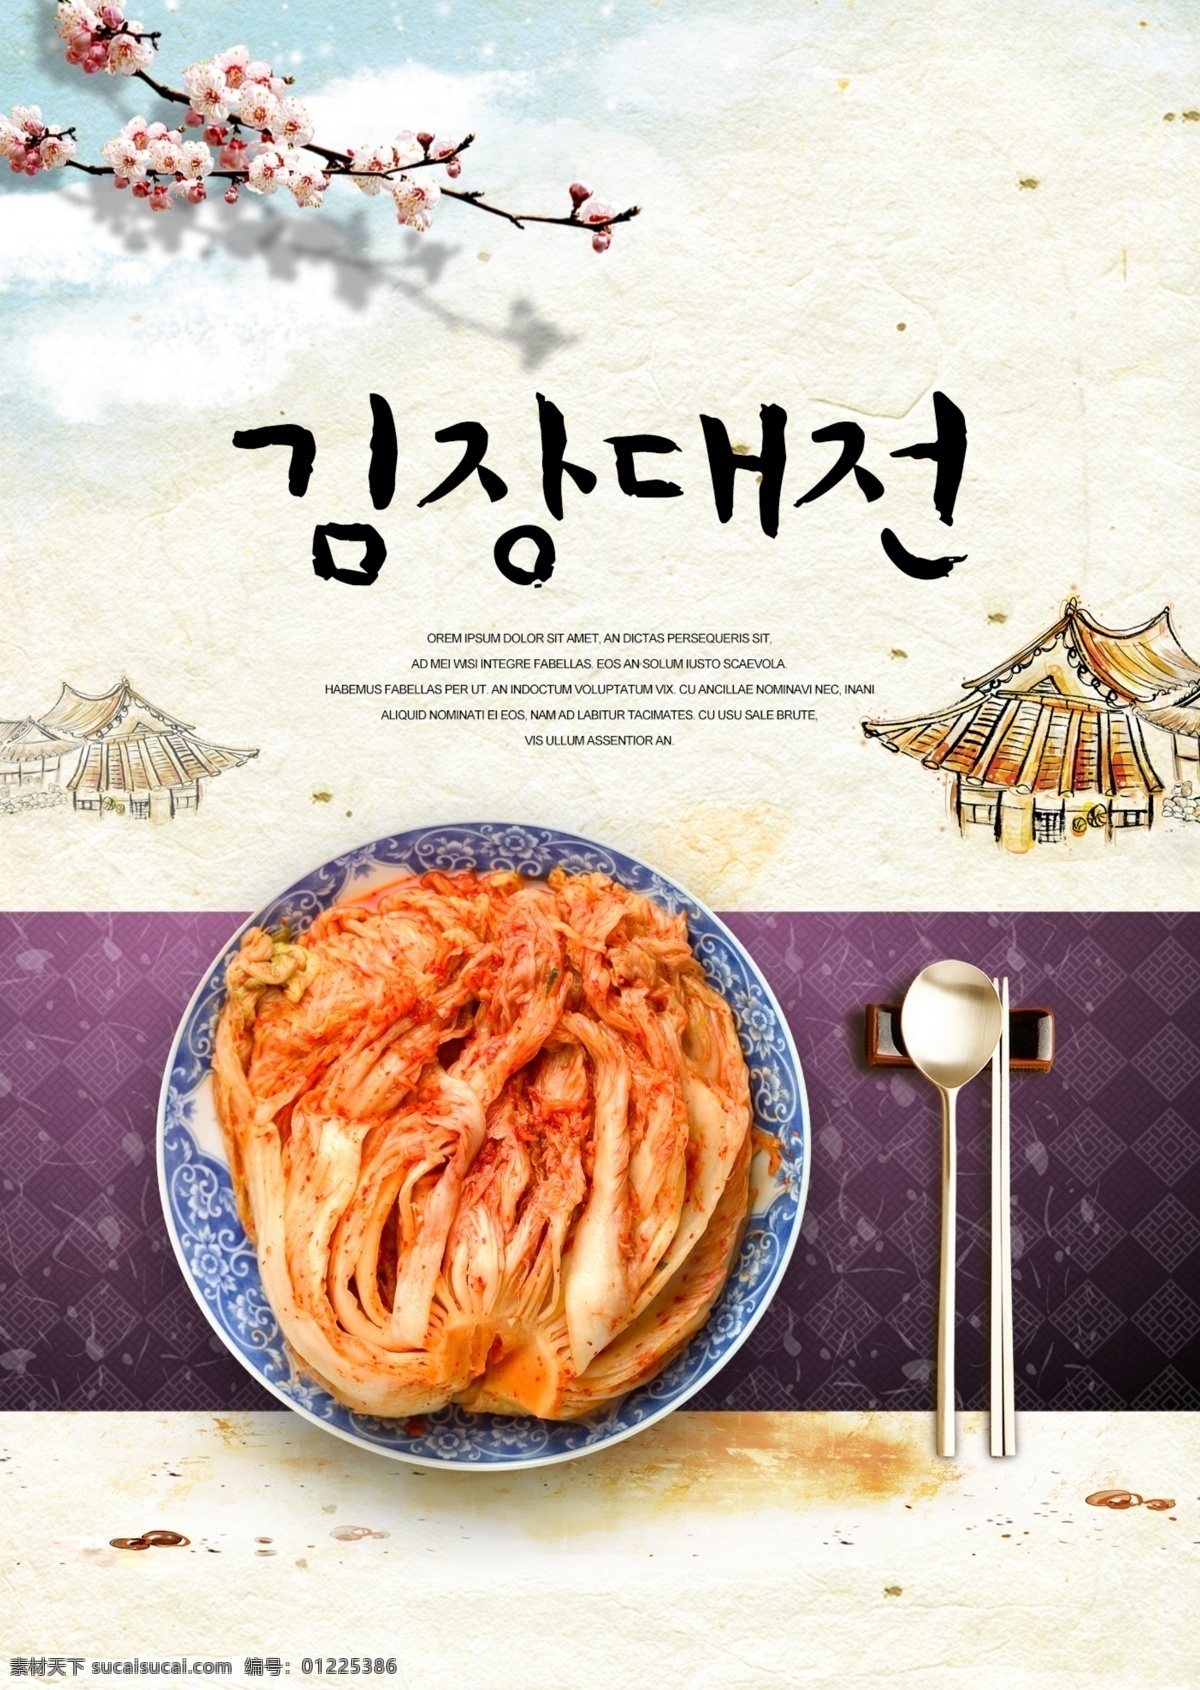 经典 多彩 韩国 泡菜 假日 海报 时尚 华美 朝鲜的 节日 颜色 香囊 辣椒 表 团圆 美味的